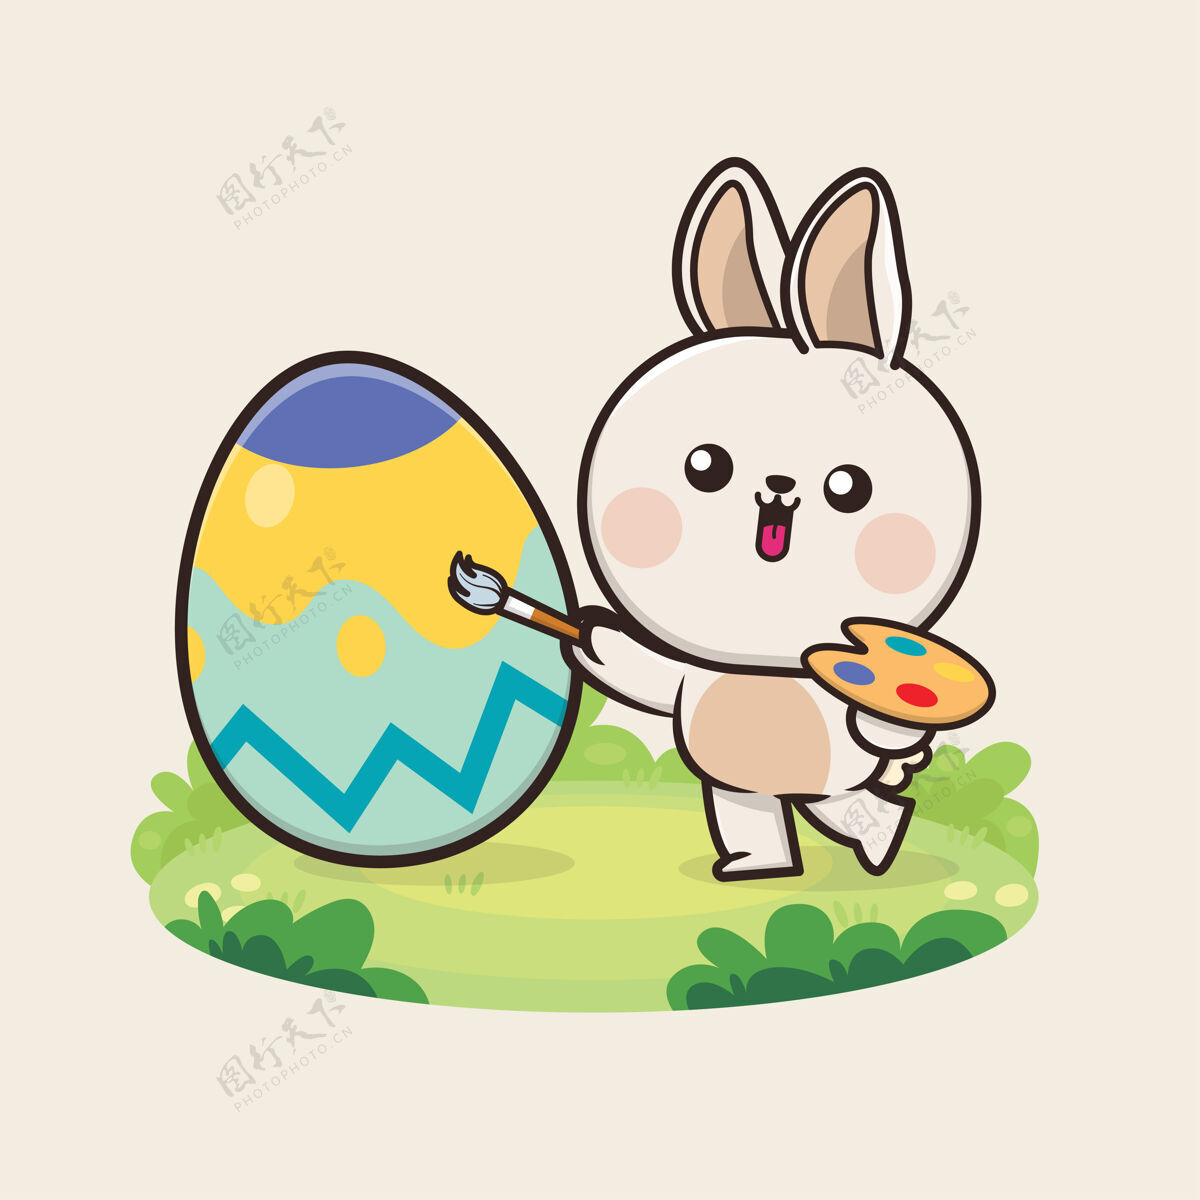 吉祥物复活节快乐的背景与卡瓦伊可爱的兔子兔子插图复活节扁平图形